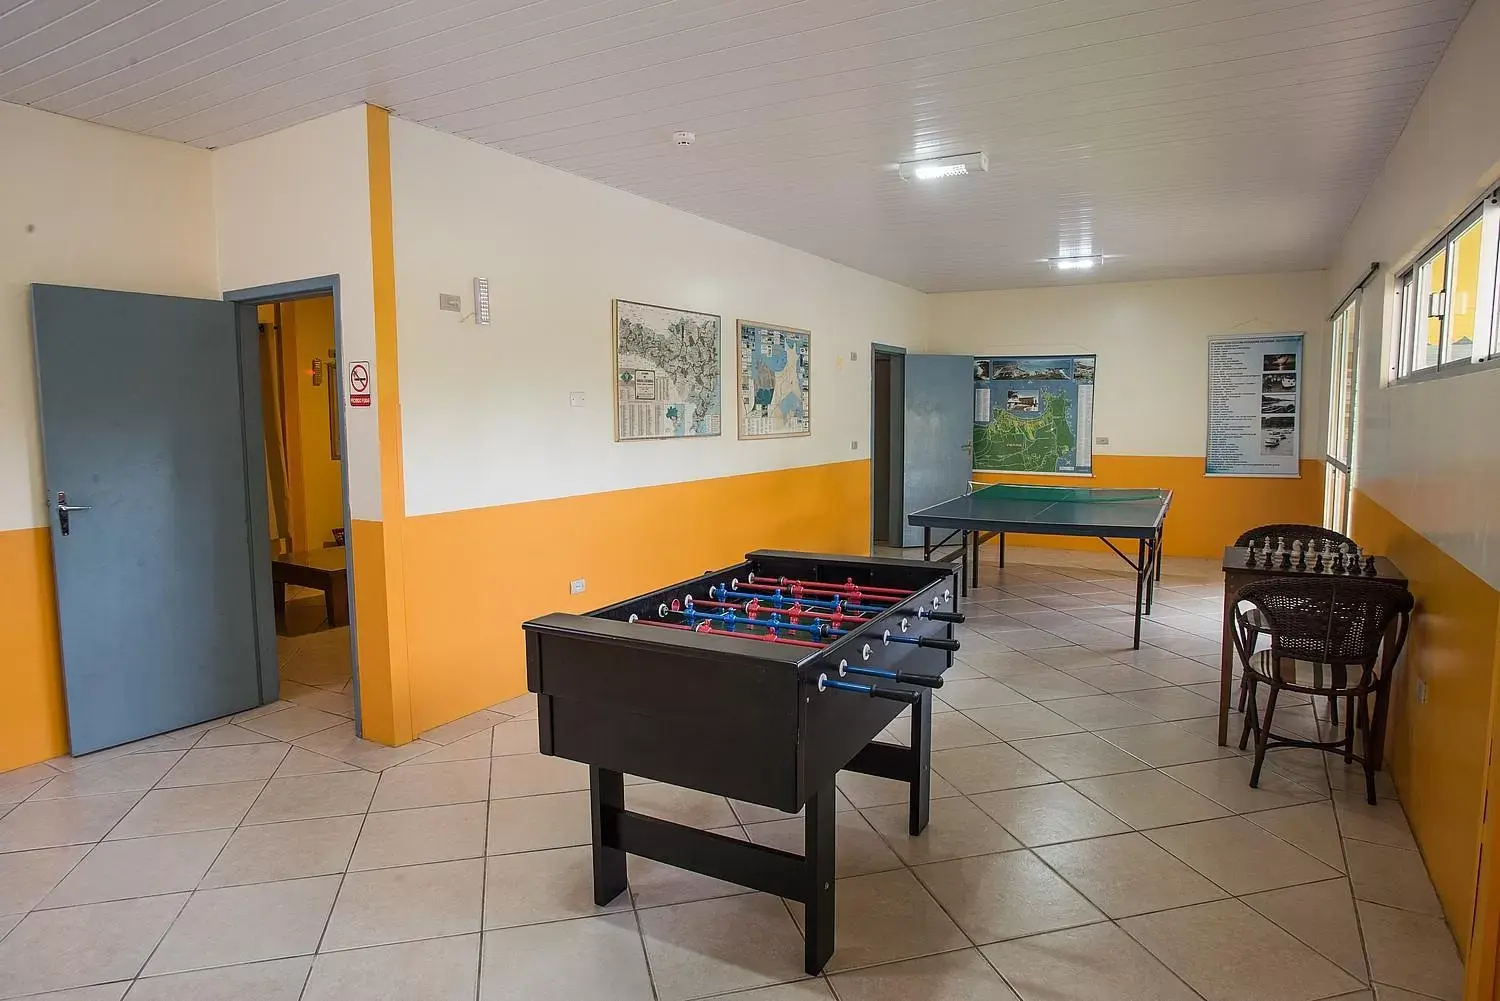 Game Room, Billiards in Vila Olaria Hotel